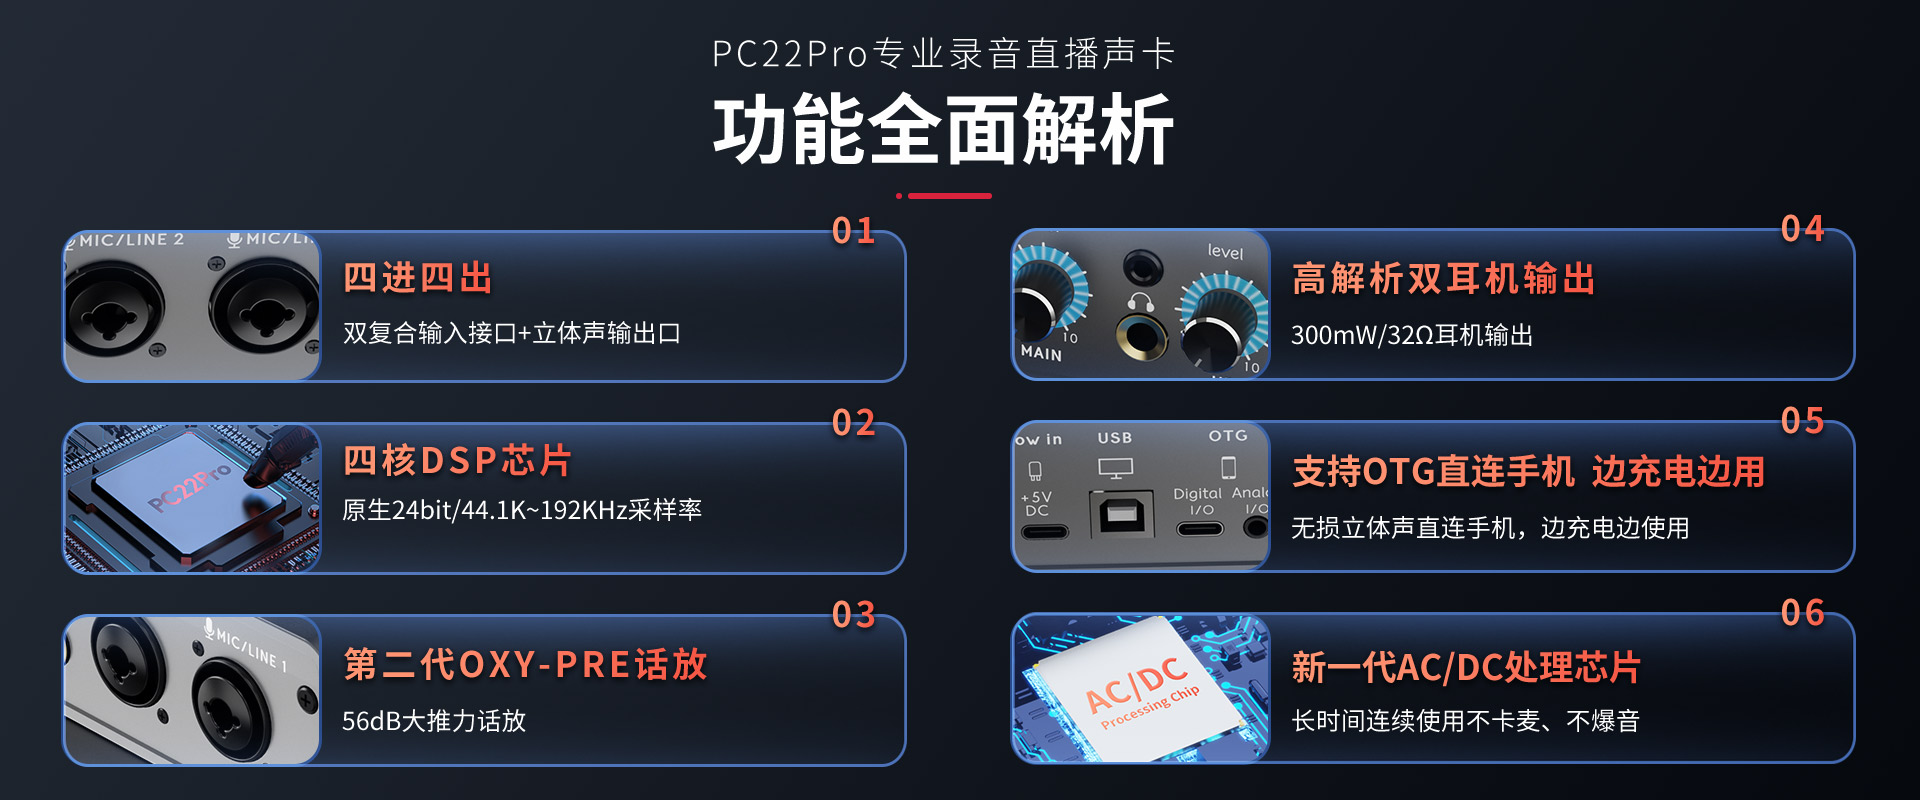 PC22Pro